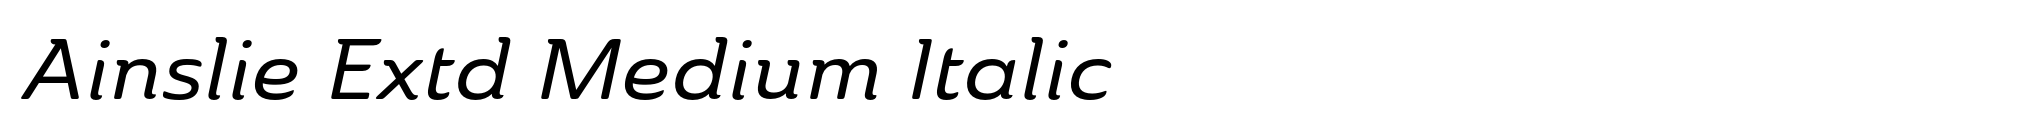 Ainslie Extd Medium Italic image